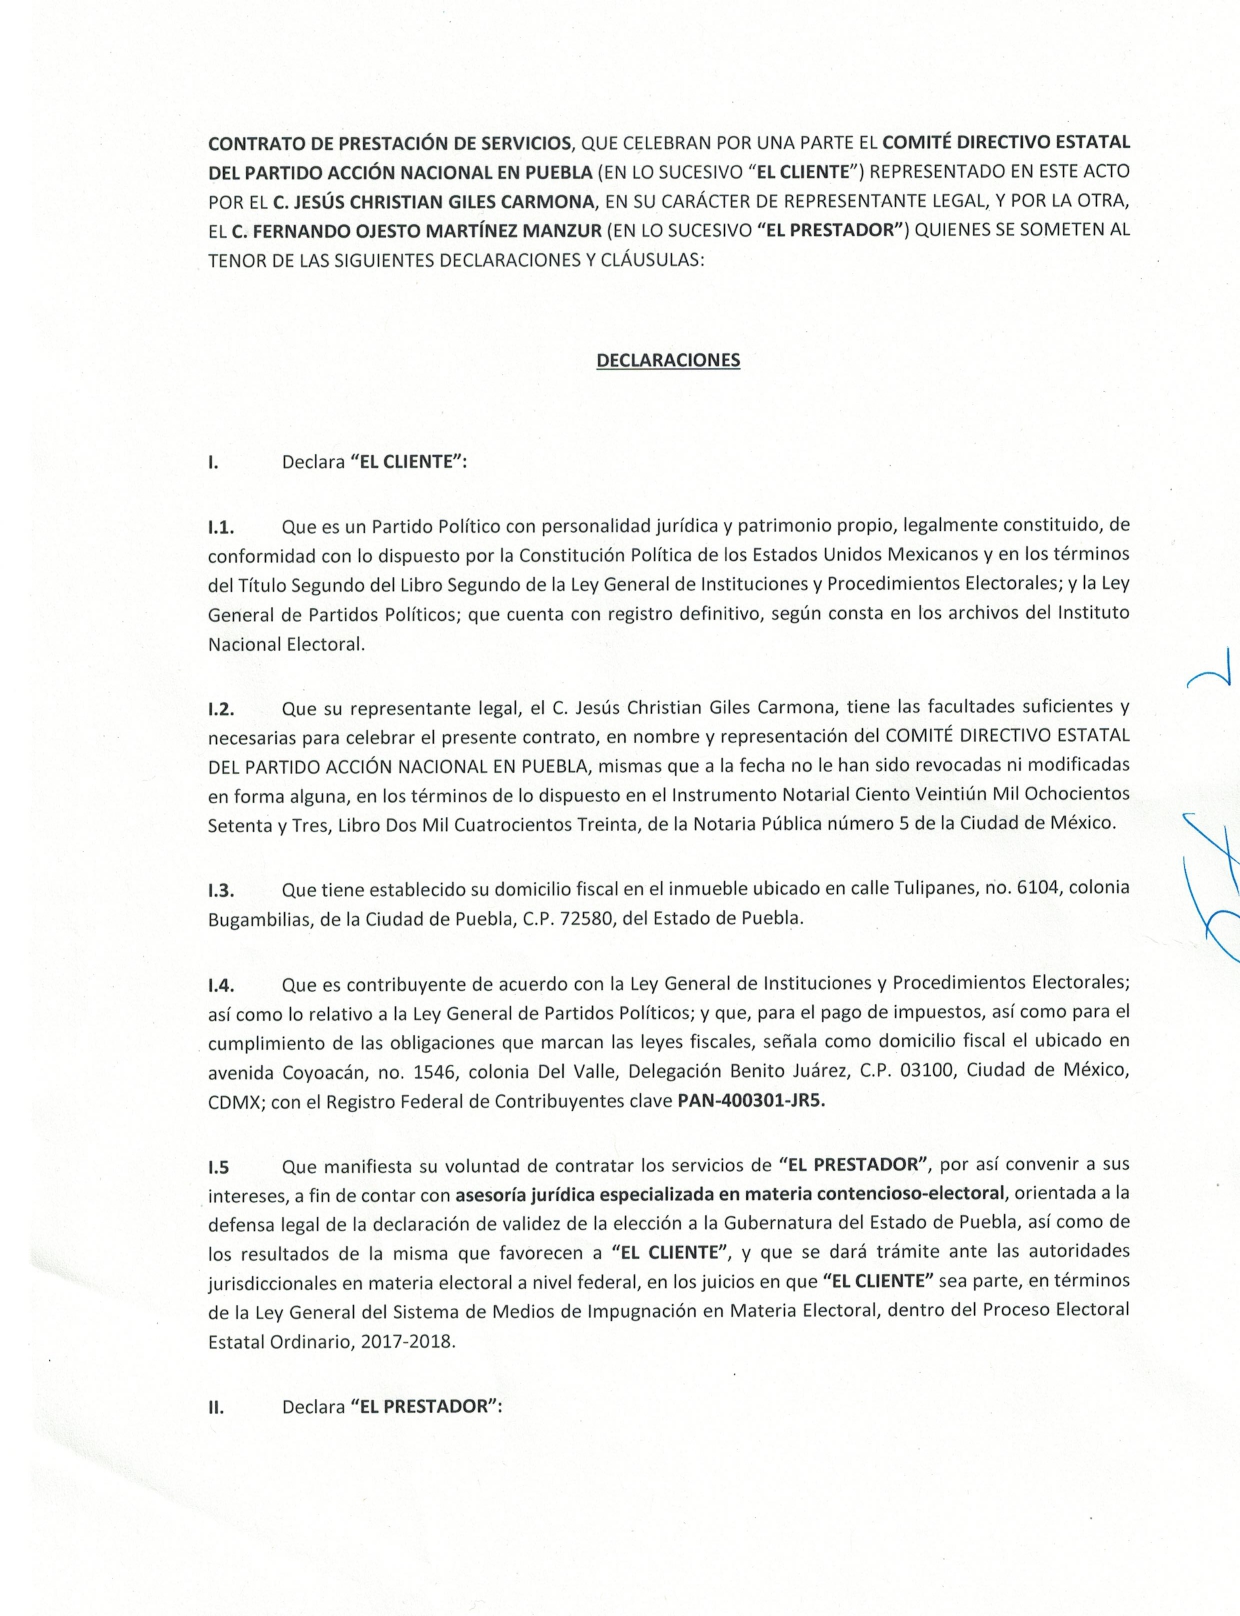 Dinero desperdiciado: 500 mil pesos pagó el PAN al consultor Fernando Ojesto por litigio con Morena ante el TEPJF